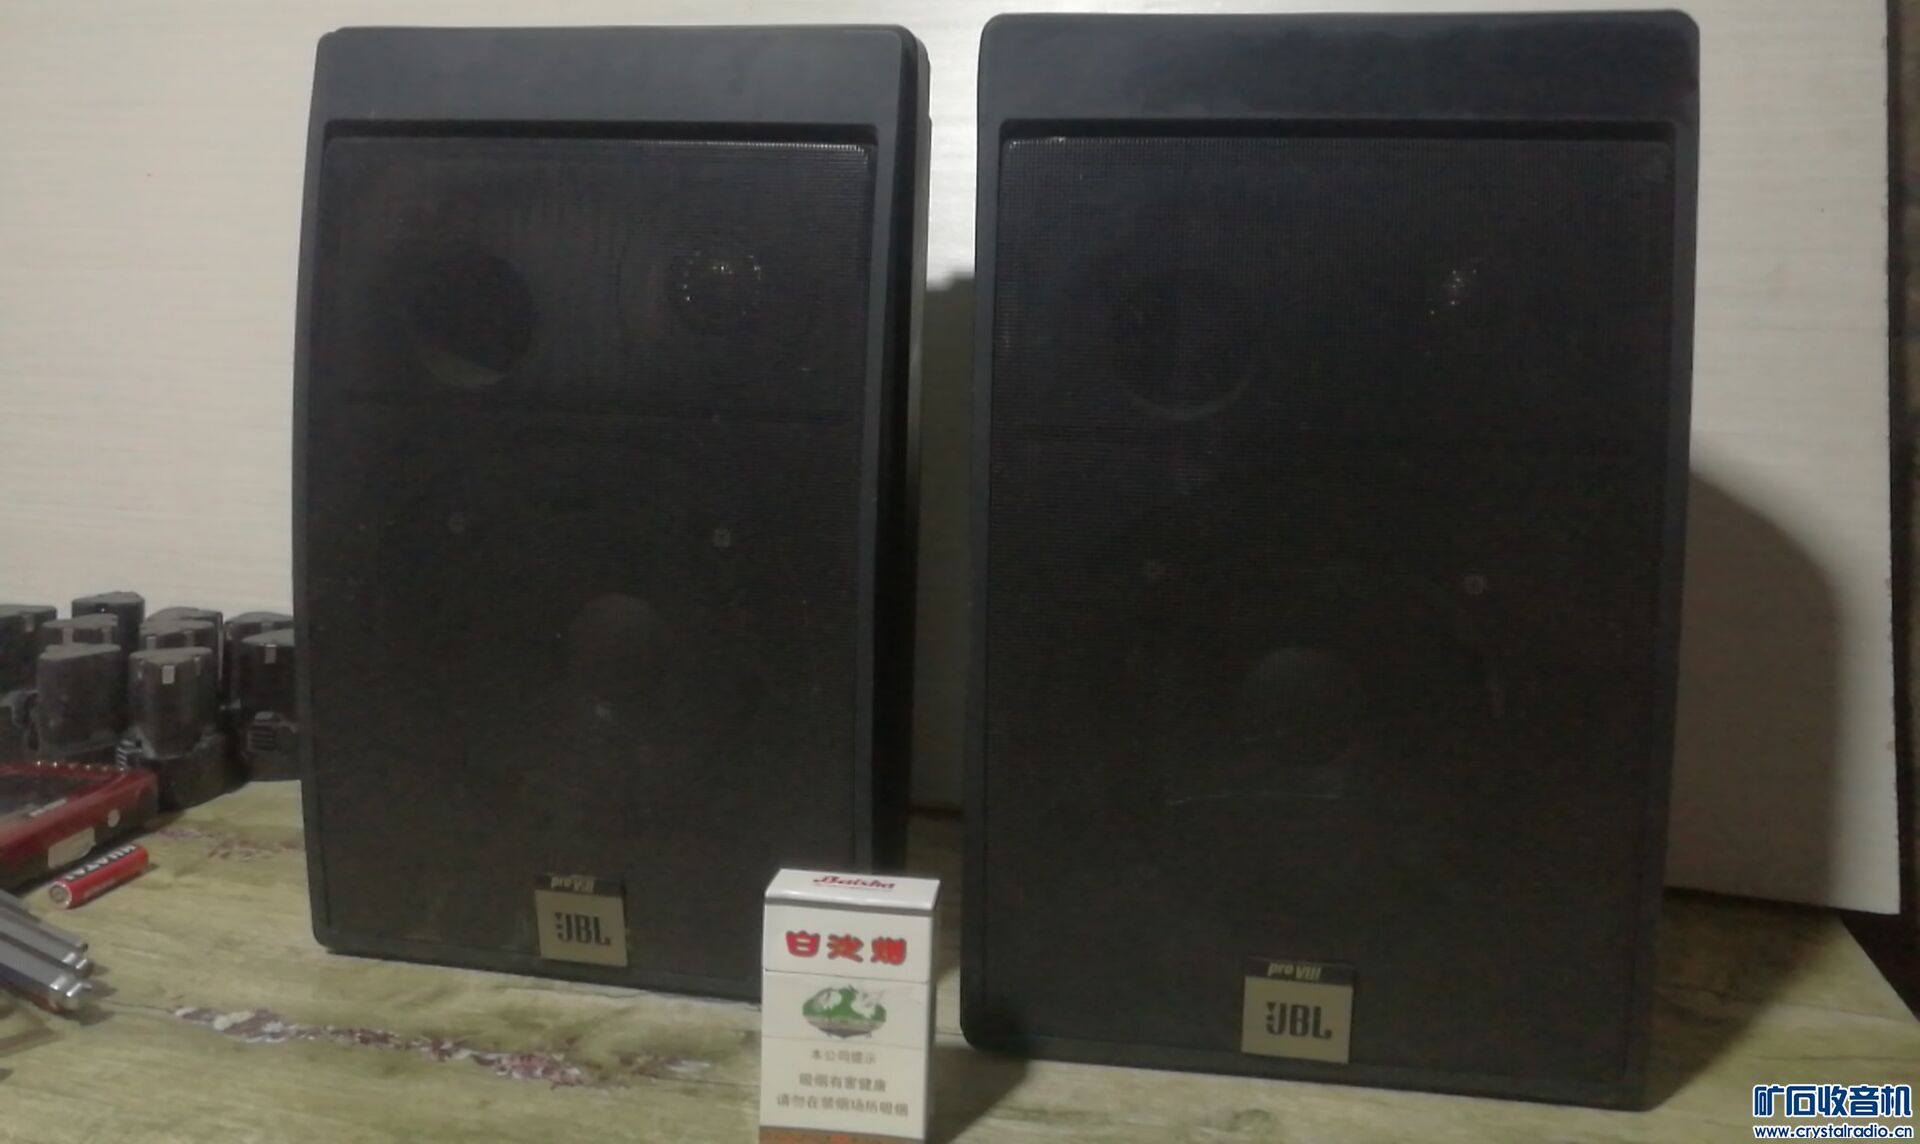 日本掌上游戏机,JBL监听音箱,夏普900收录机